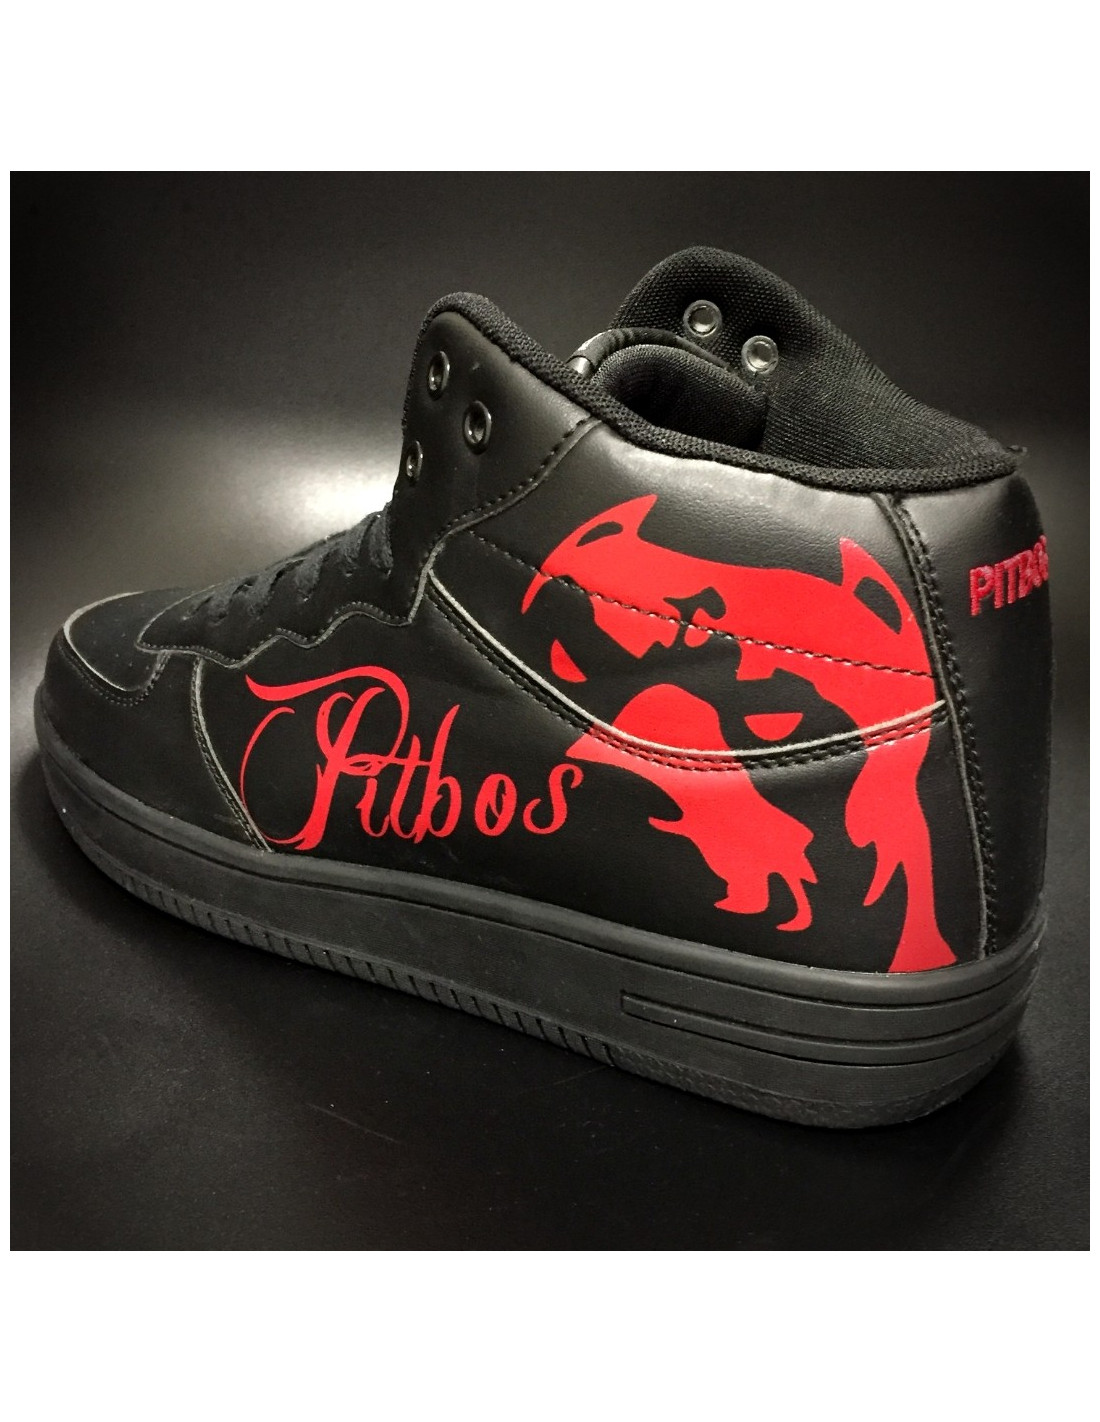 Pitbos Street Sneakers BlackNRed